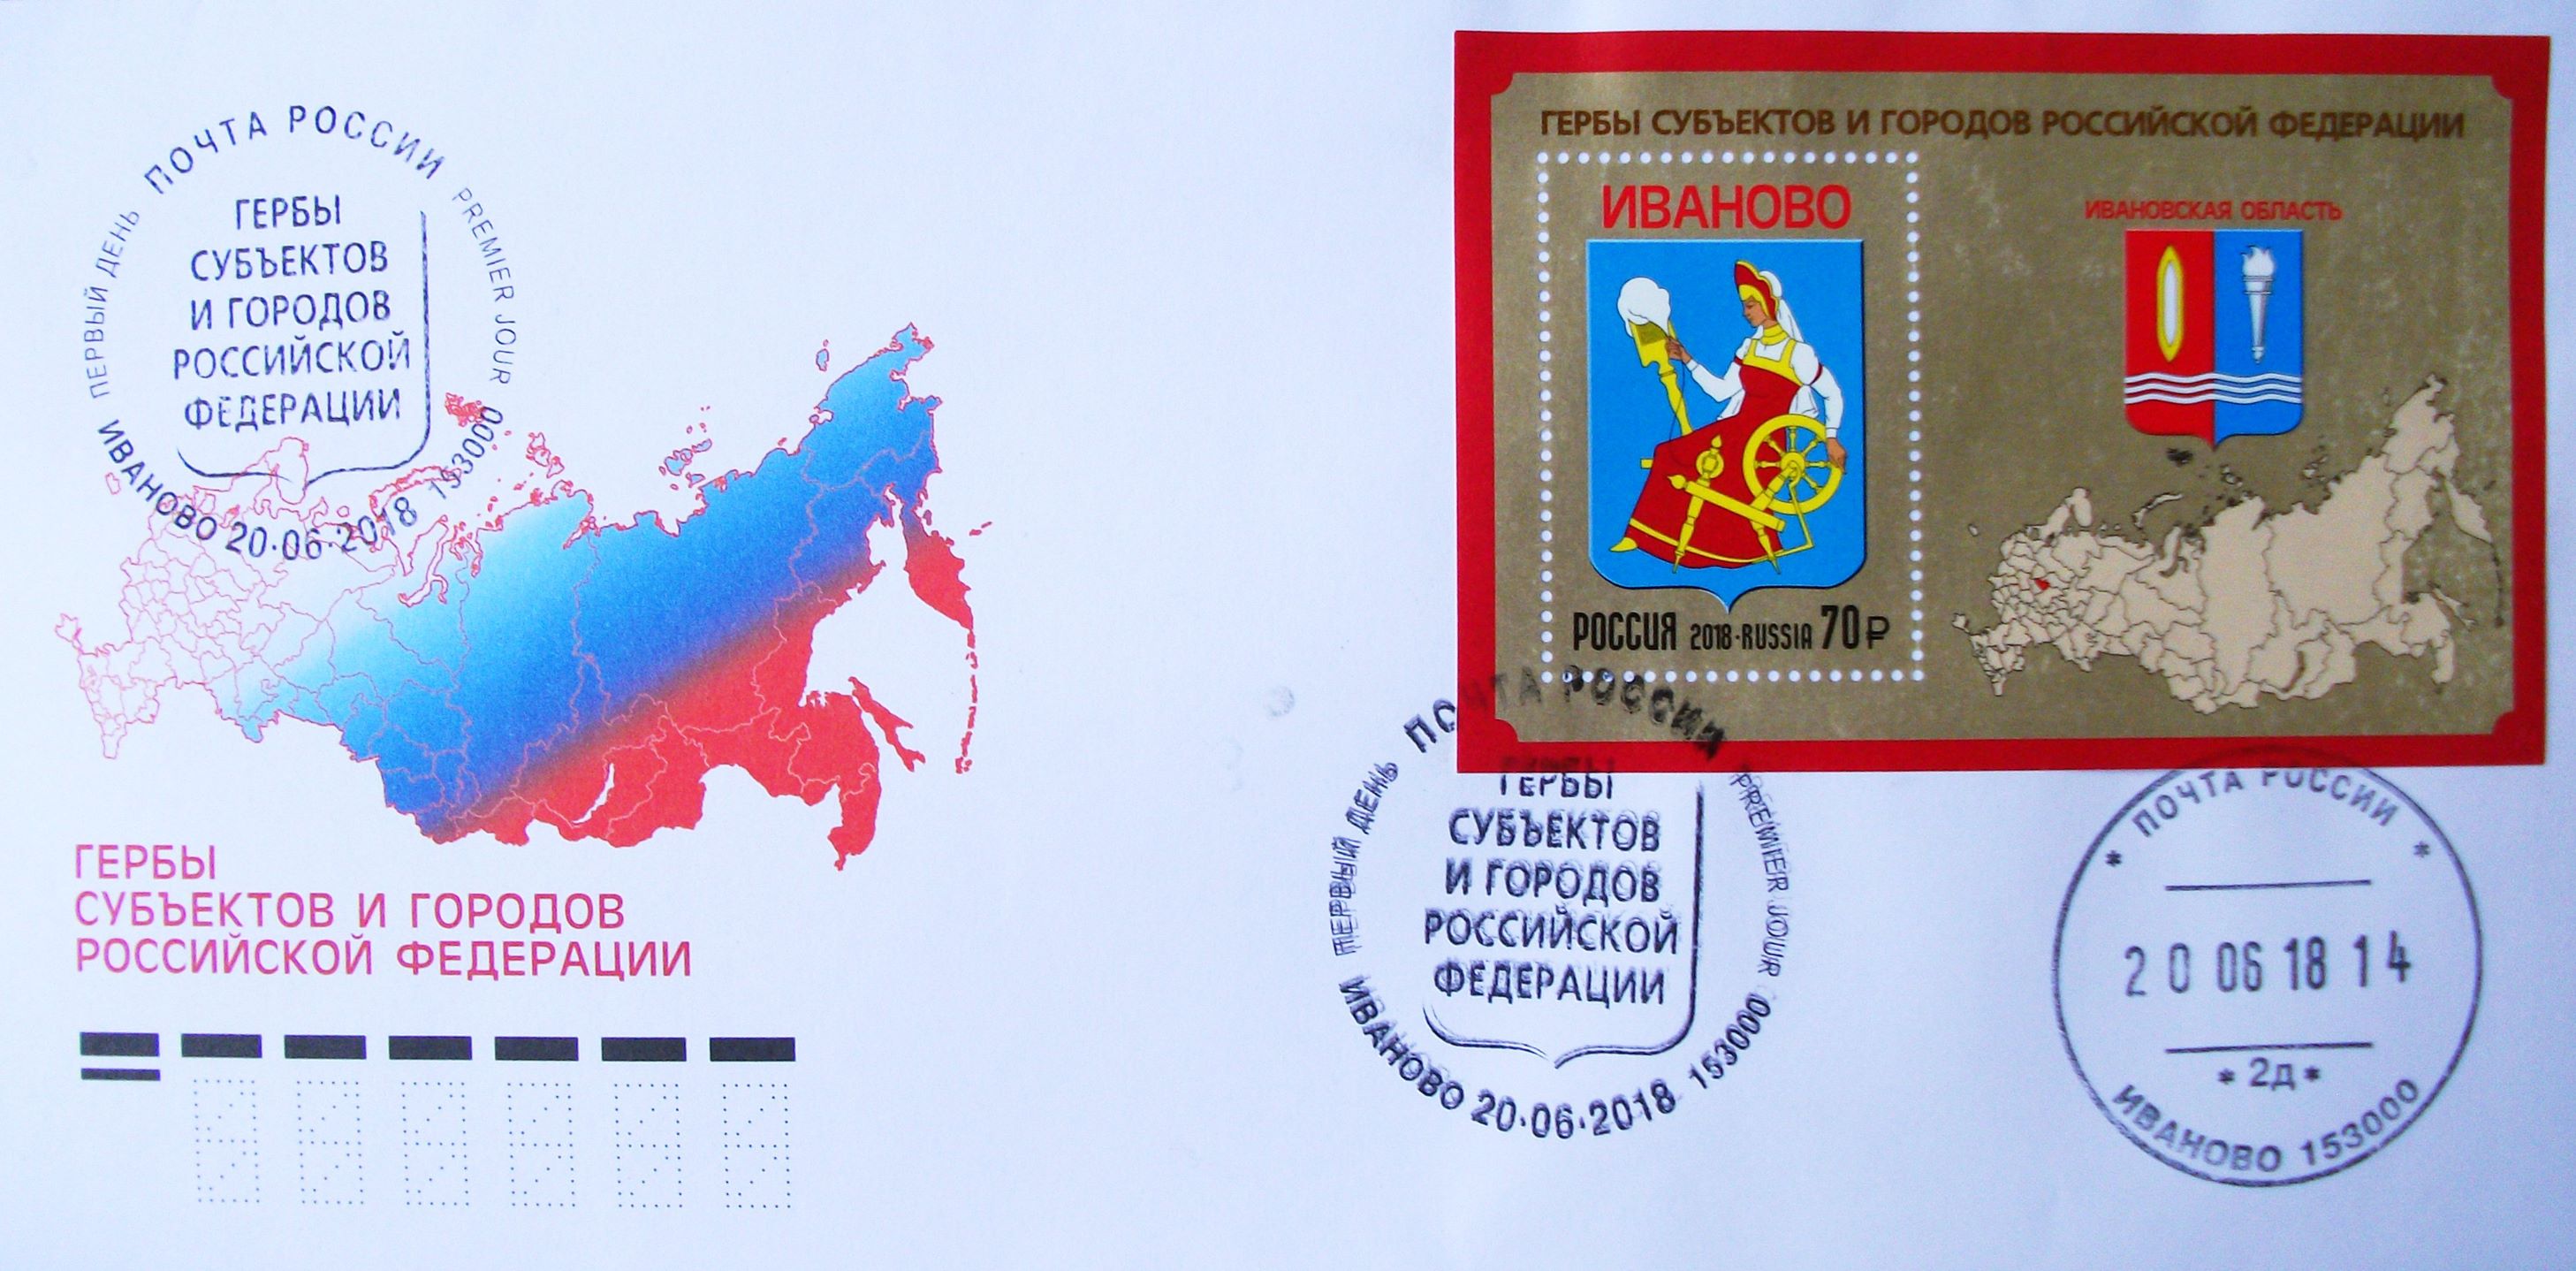 Герб Ивановской области на почтовой марке оказался неполным